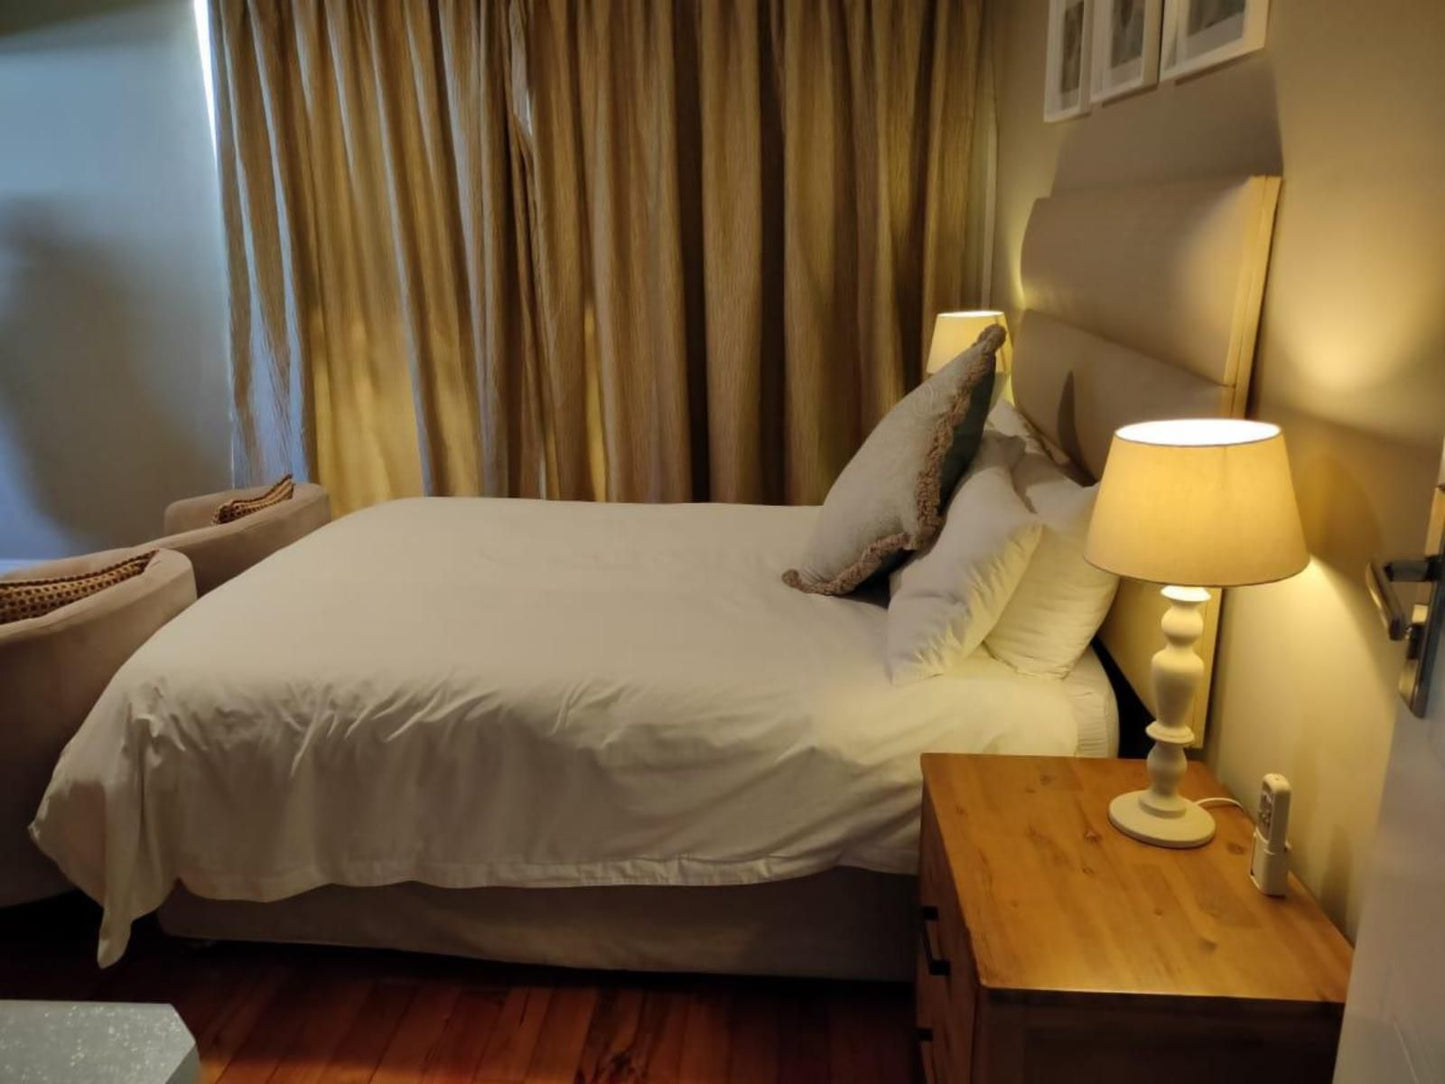 Cashmere Suites Cotswold Port Elizabeth Eastern Cape South Africa Bedroom